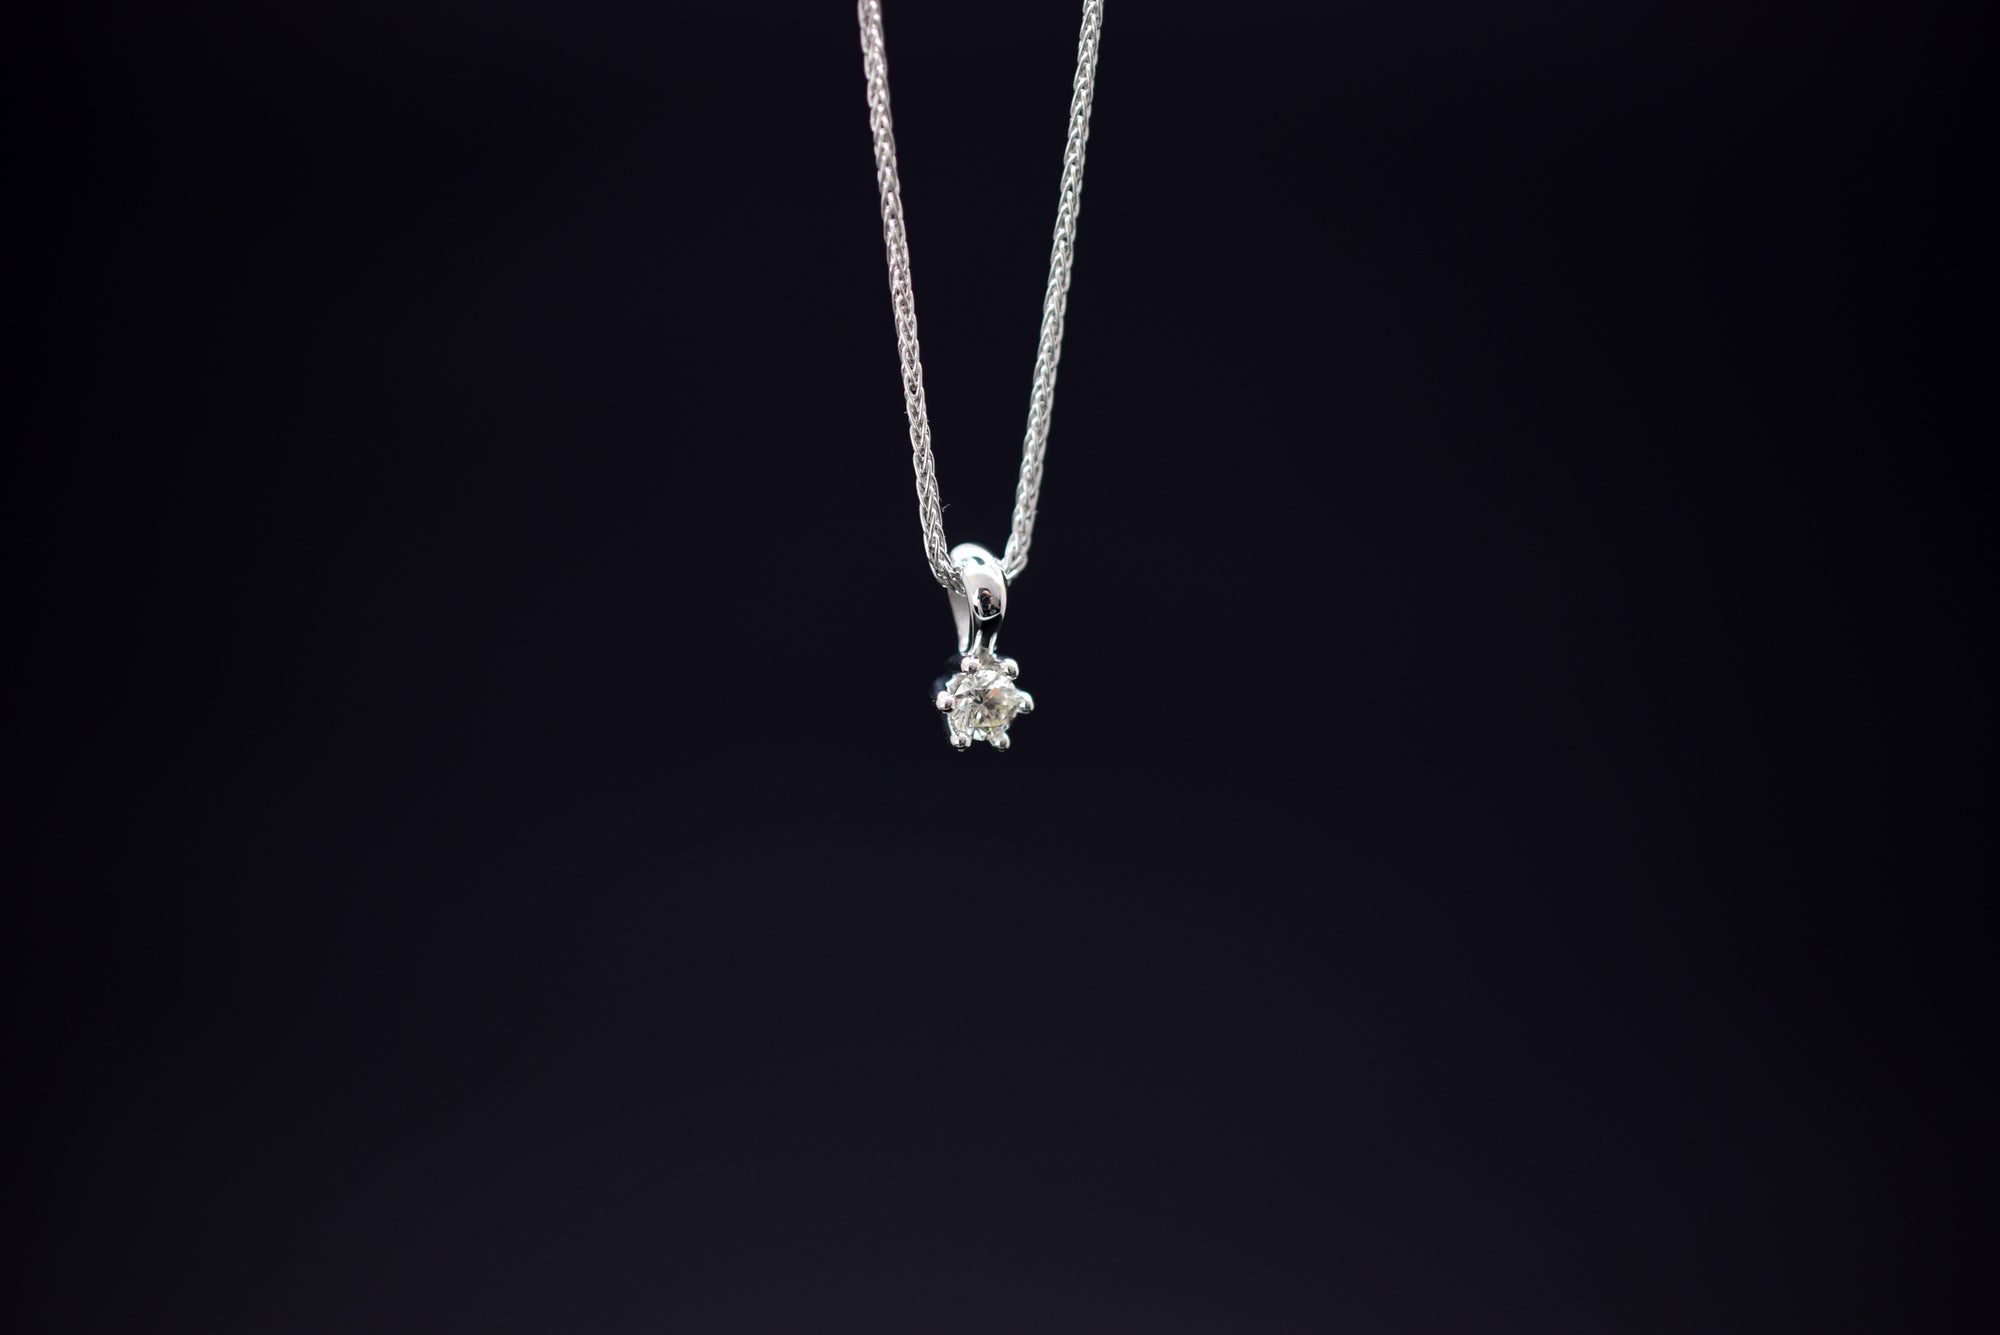 Halskette mit Diamantanhänger - 585er Weißgold - ca. 0.09 ct.